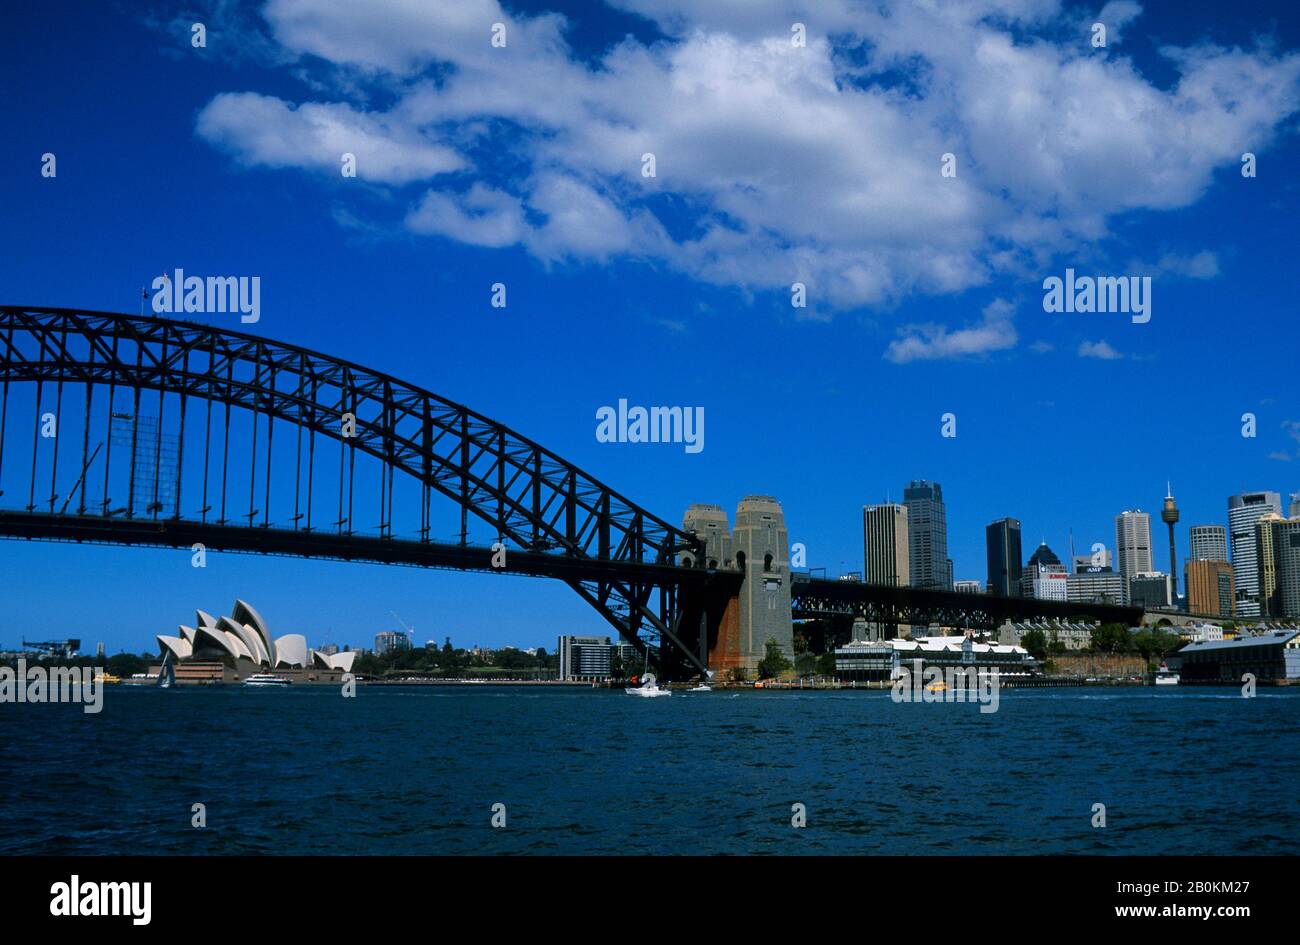 AUSTRALIEN, SYDNEY, BLICK AUF DIE SYDNEY HARBOUR BRIDGE, OPERNHAUS IM HINTERGRUND Stockfoto